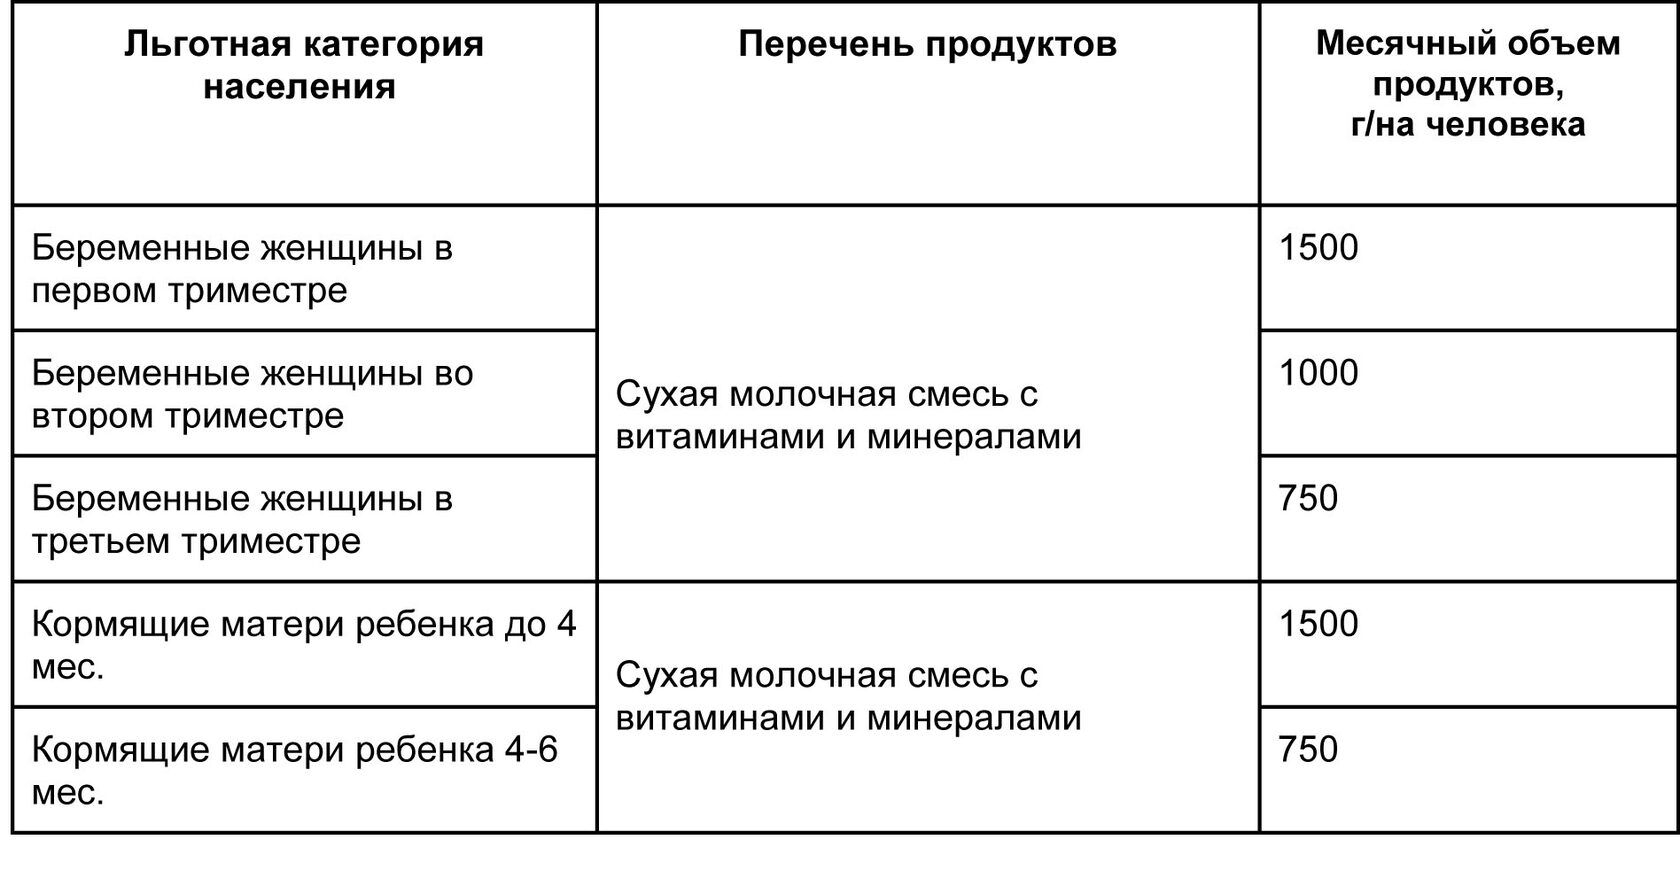 Набор и количество бесплатных товаров для детей и женщин в Санкт-Петербурге